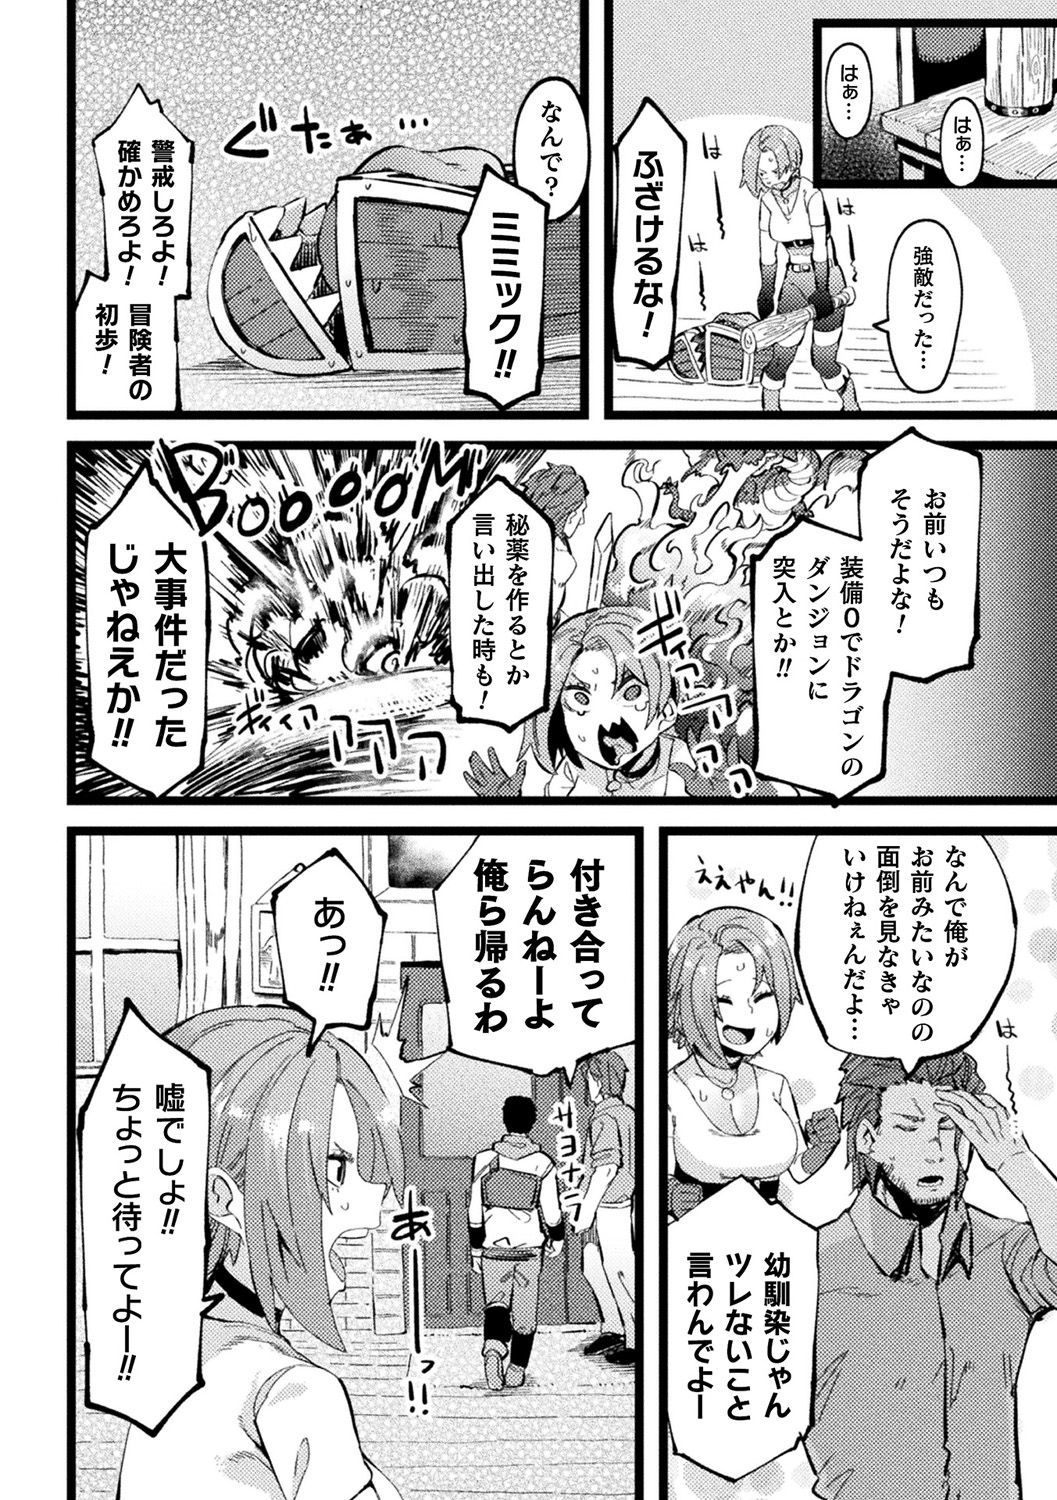 [Anthology] Bessatsu Comic Unreal Ponkotsu Fantasy Heroine H ~Doji o Funde Gyakuten Saretari Ero Trap ni Hamattari!?~ Vol. 2 [Digital] page 41 full